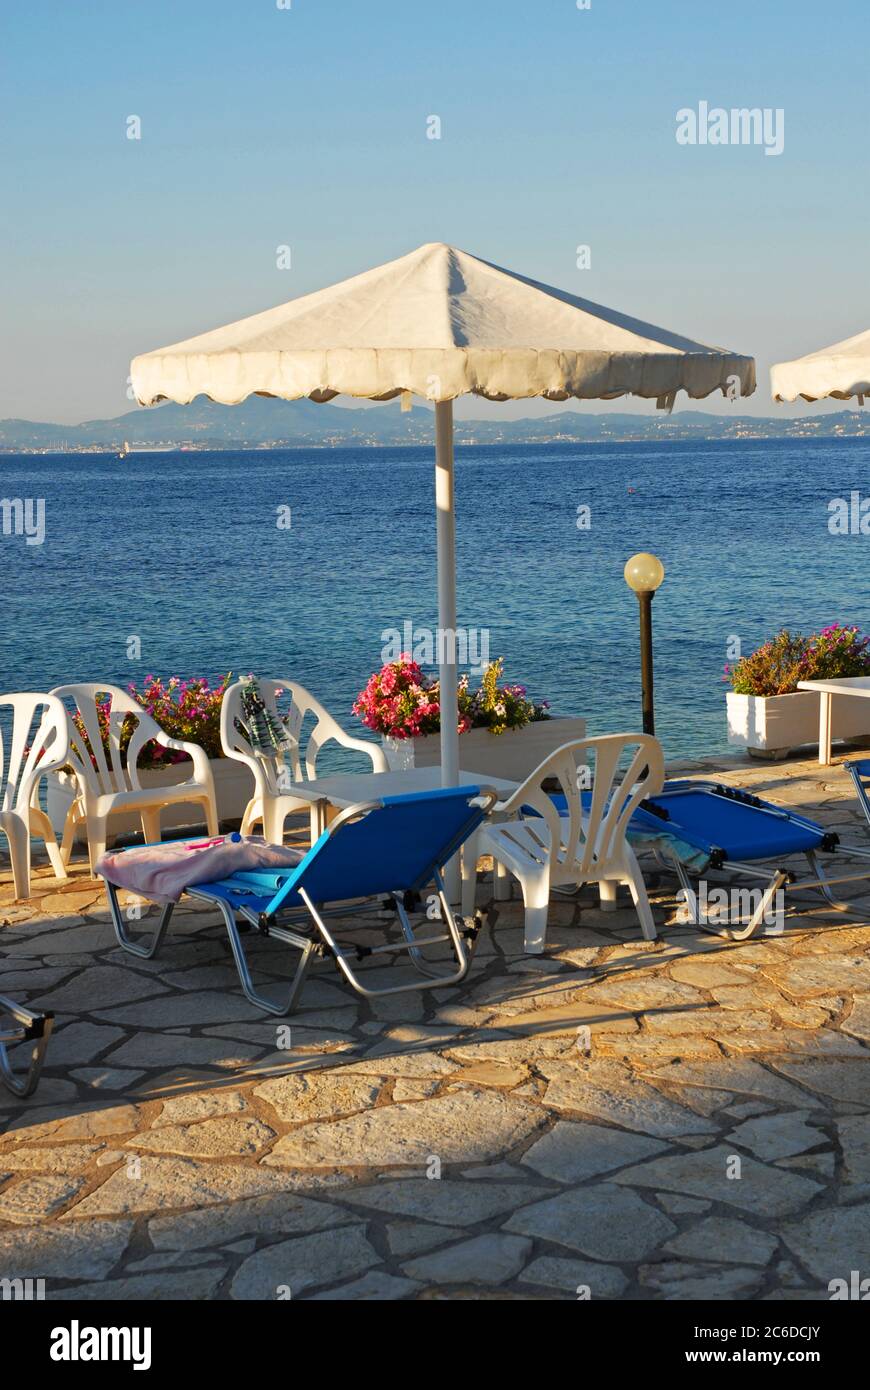 Mattina presto in hotel, Corfu, Grecia, con asciugamano sul lettino da prendere per prenotarlo per uso successivo Foto Stock